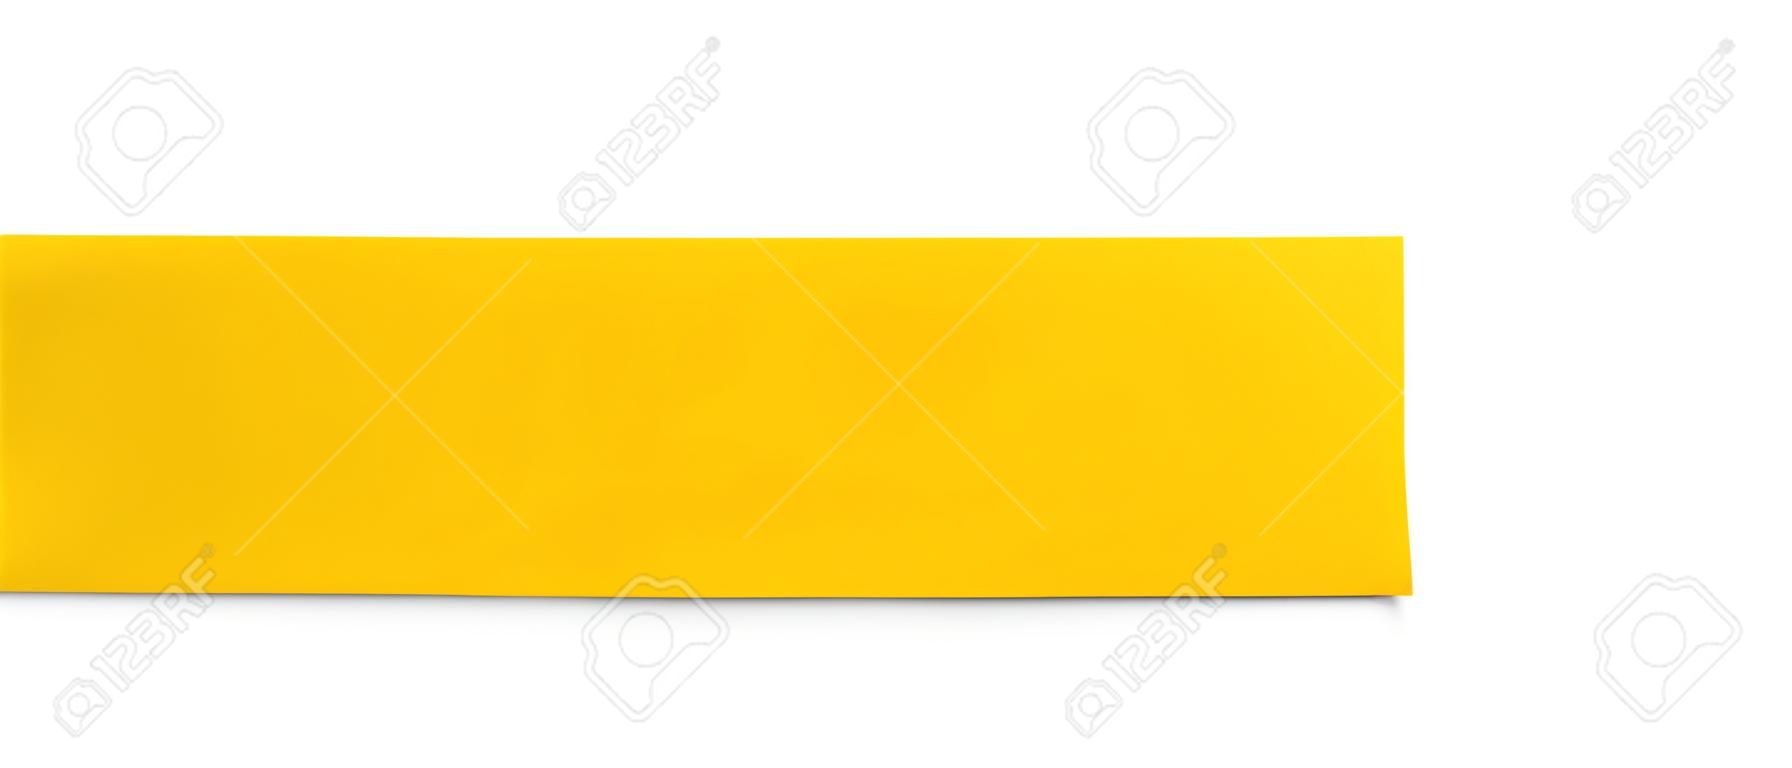 banner de papel amarelo isolado no branco